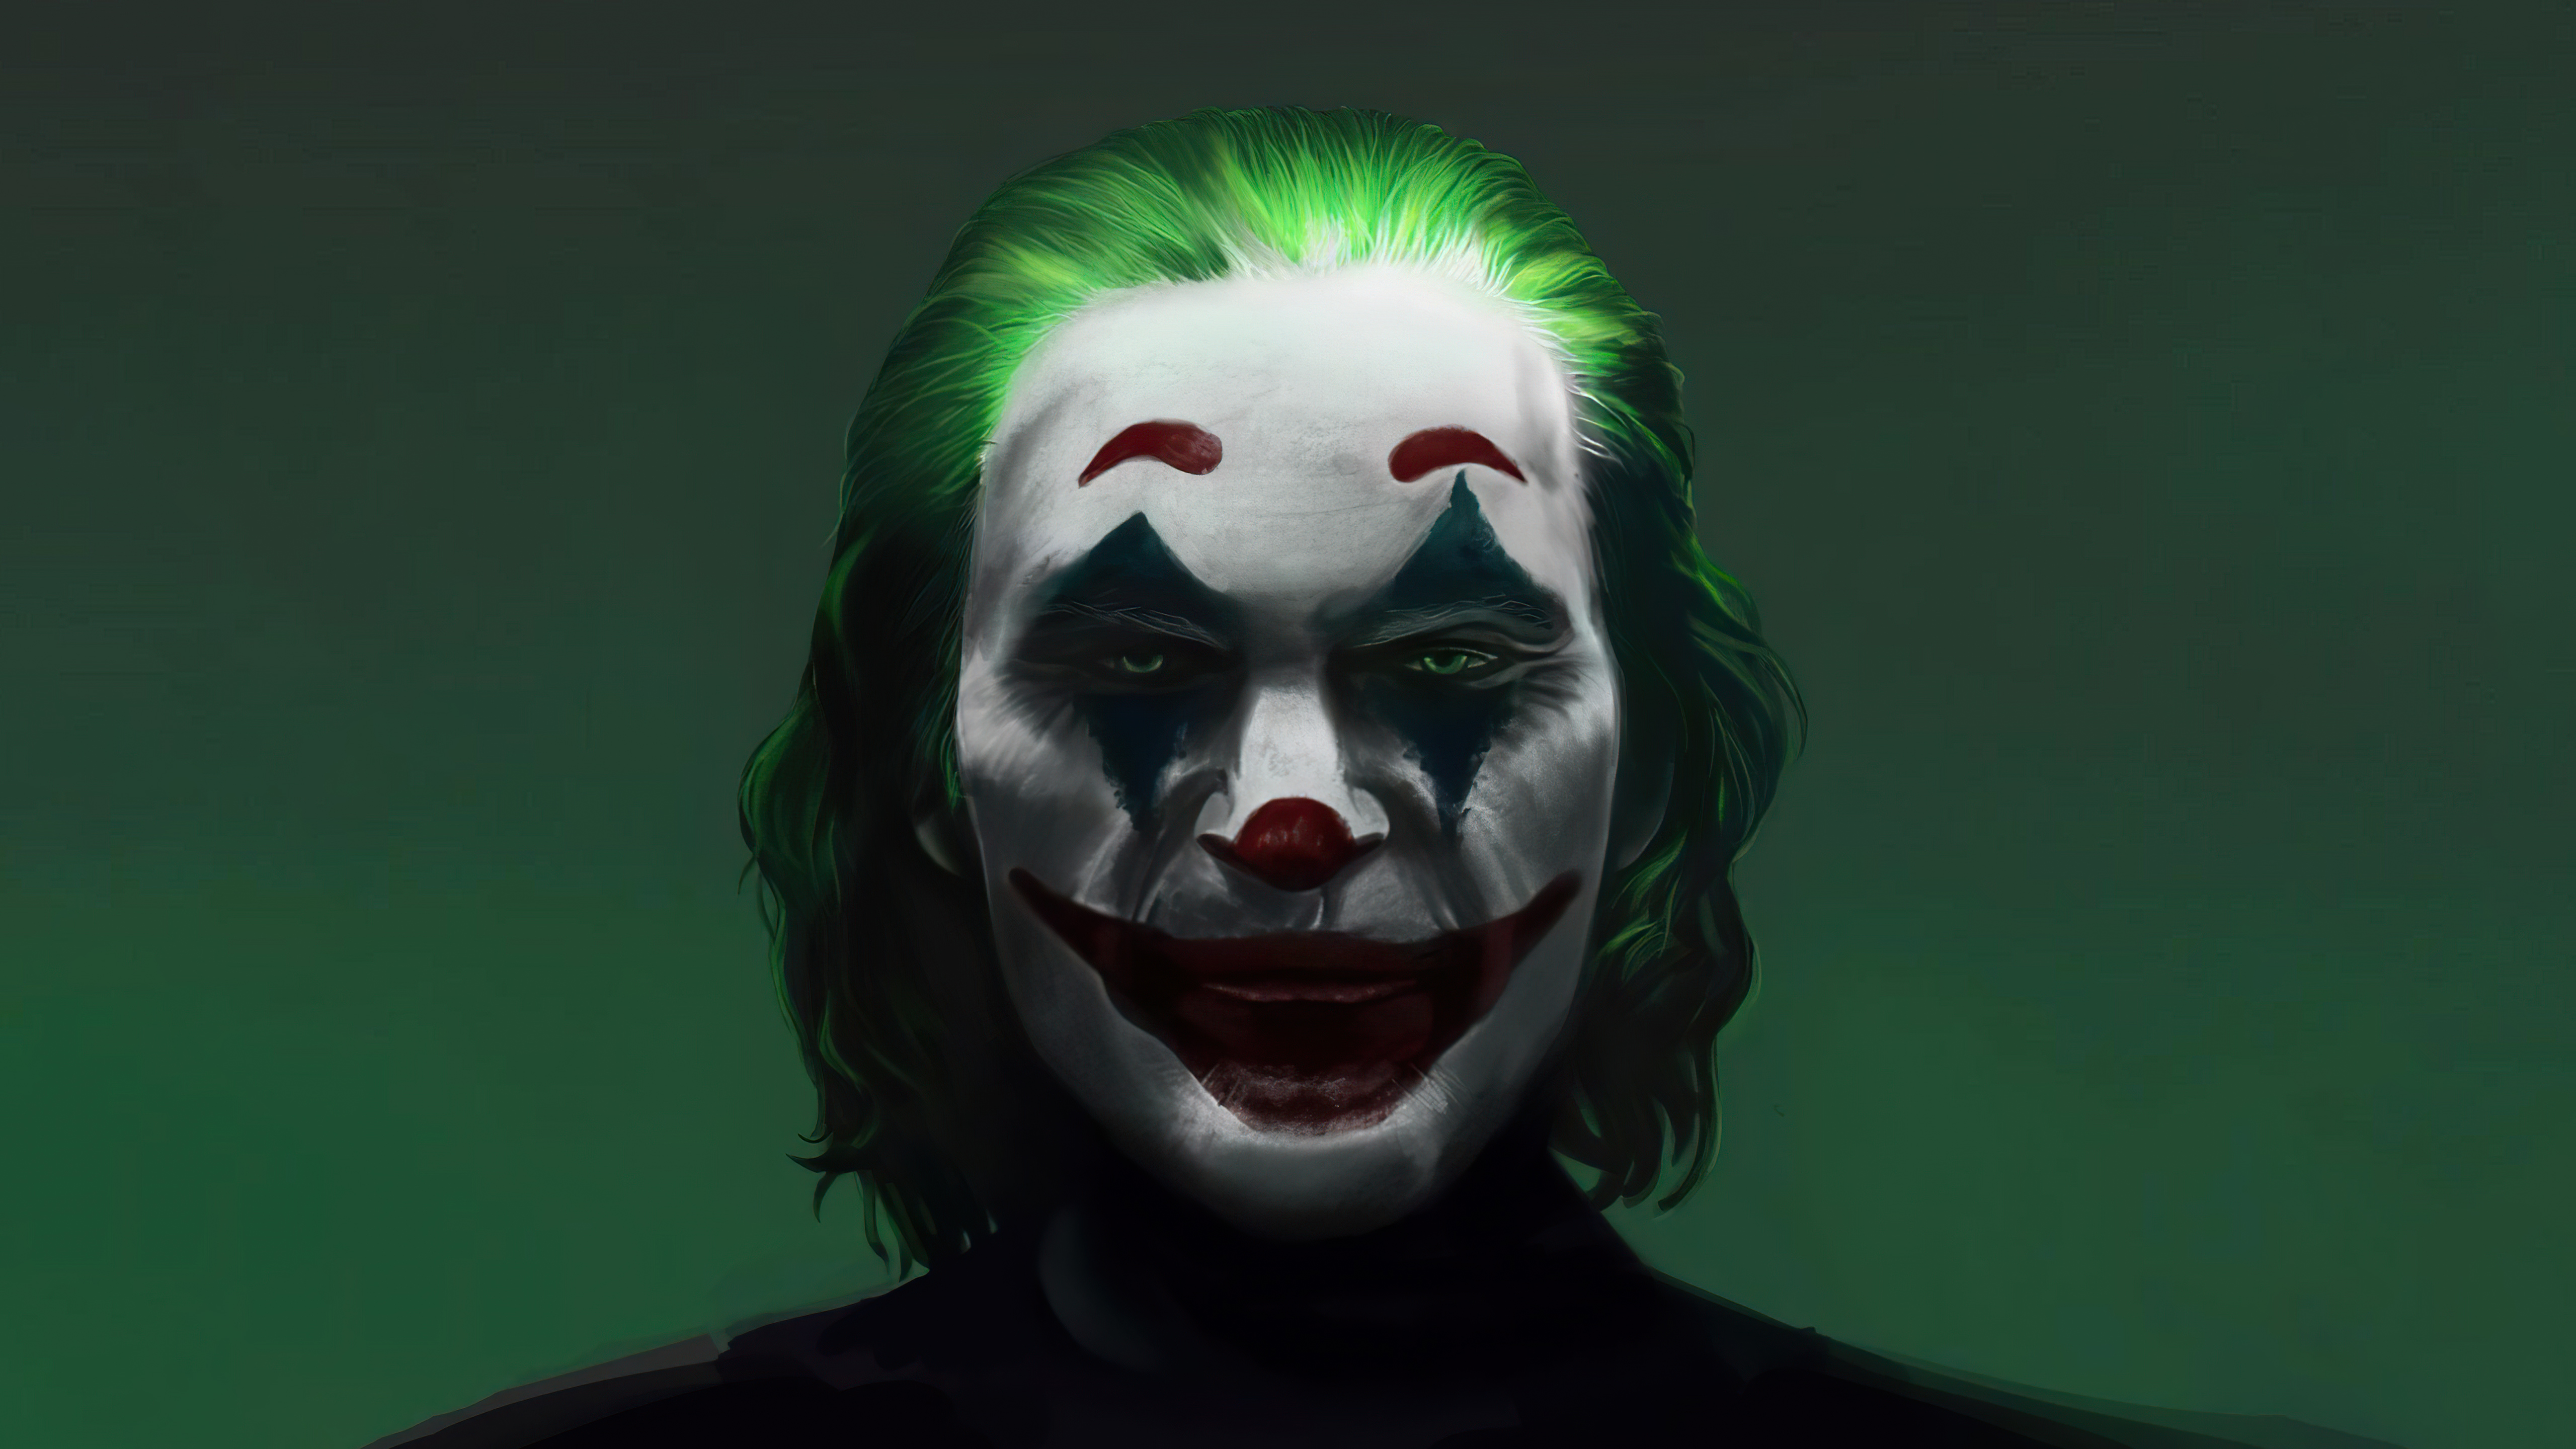 Joker's face in the shadows Wallpaper 5k Ultra HD ID:9225